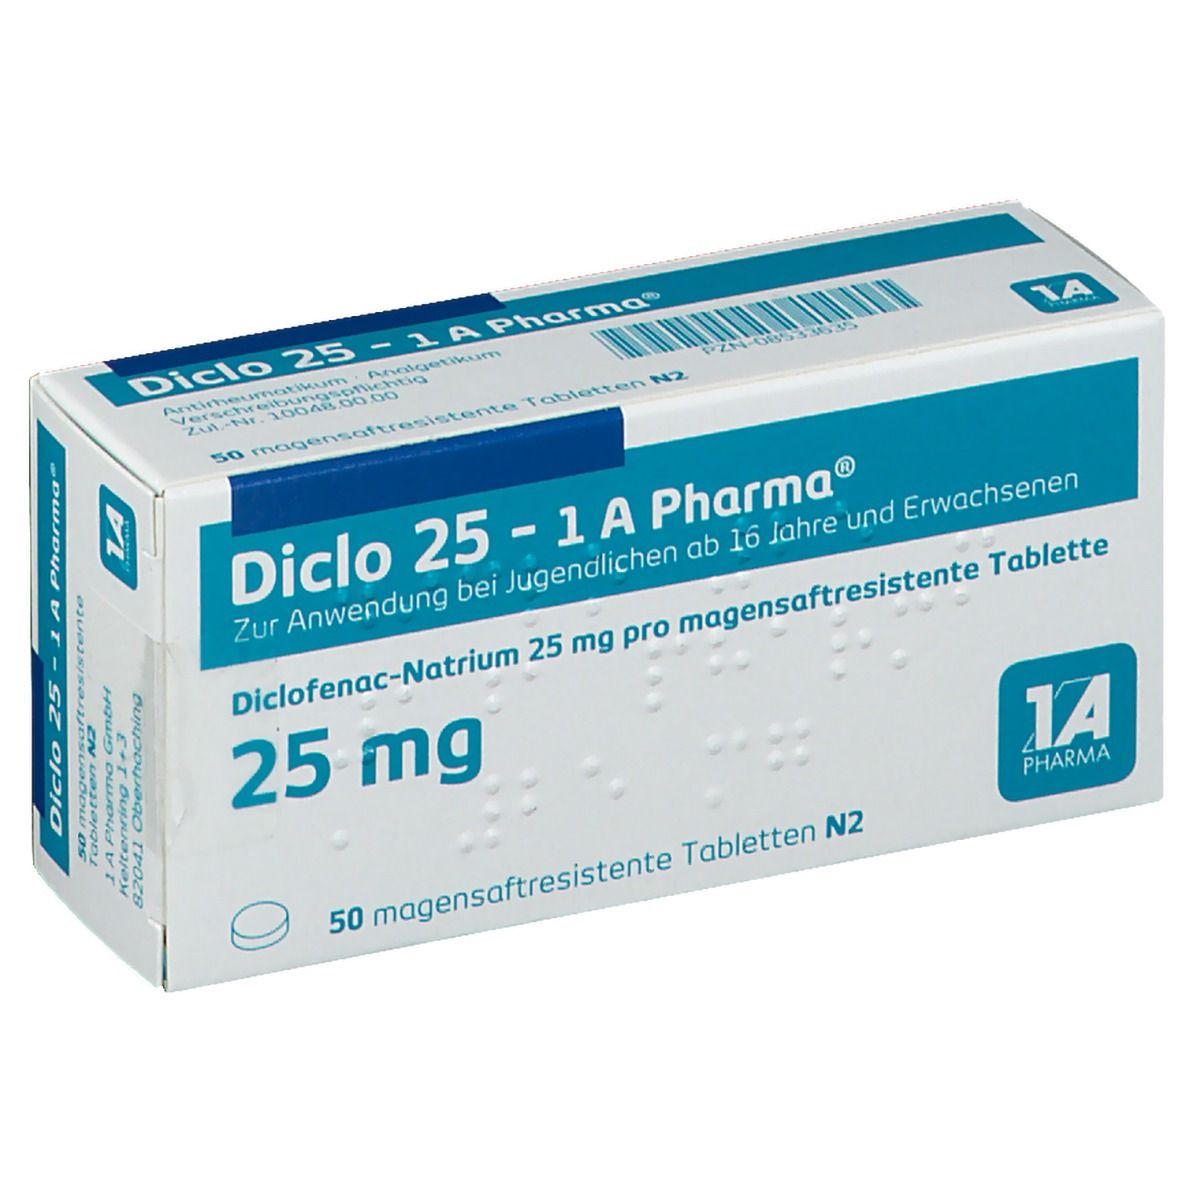 Diclo 25 1A Pharma®